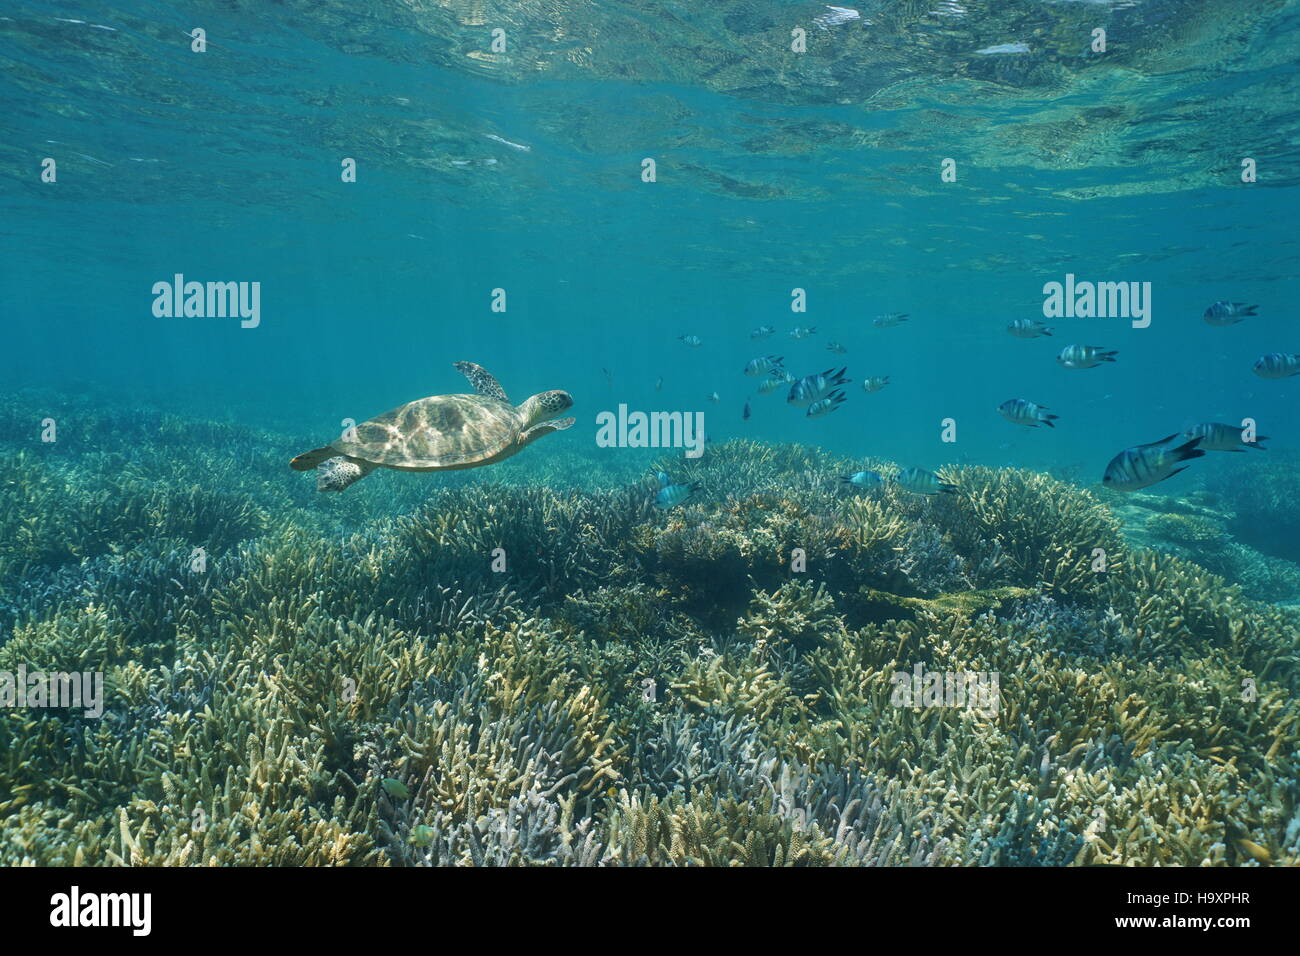 Underwater barriera corallina con una tartaruga verde e pesce, Nuova Caledonia, oceano pacifico del sud Foto Stock